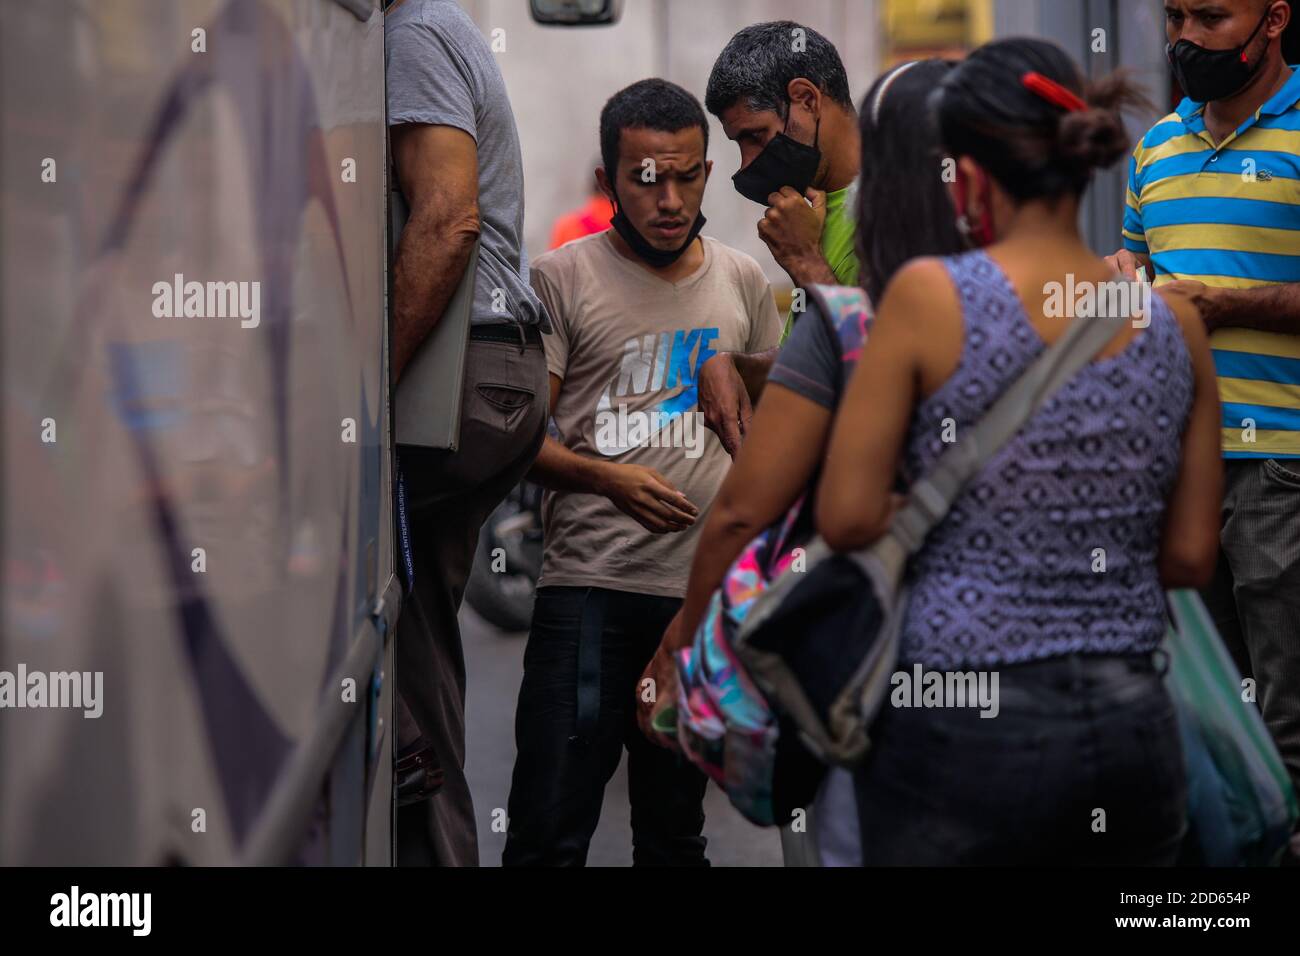 Caracas, Venezuela. November 2020. Ein Mann mit einer Maske auf überprüft Passagiere, bevor sie in einen Bus einsteigen. Viele Menschen auf der ganzen Welt tragen die obligatorischen Masken unter ihrer Nase oder sogar ihr Kinn mitten in der Corona-Pandemie. Nach Angaben des venezolanischen Gesundheitsministeriums sollen 100,143 Menschen im Land mit Covid-19 infiziert sein und die Sterblichkeitsrate beträgt 0.87 Prozent. Ende Oktober hatte Präsident Maduro behauptet, in Venezuela sei ein hochwirksames Mittel gegen das Corona-Virus entdeckt worden. Kredit: Rafael Hernandez/dpa/Alamy Live Nachrichten Stockfoto